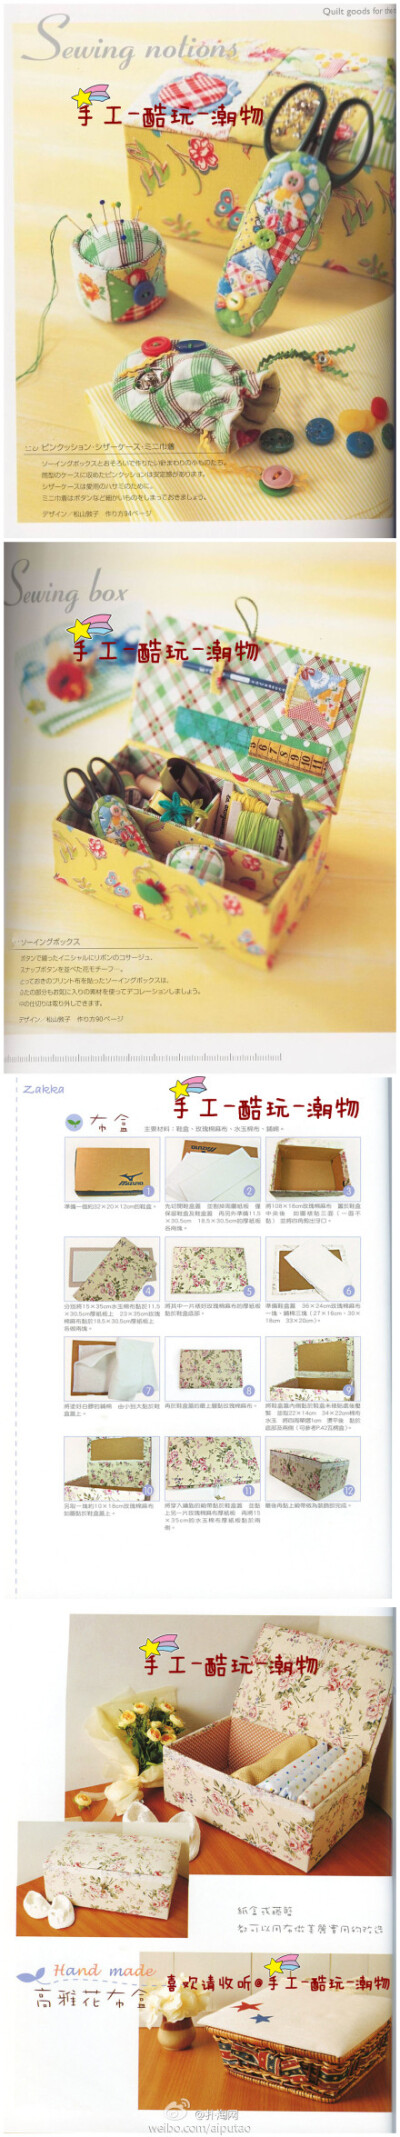 【扑淘DIY】用鞋盒就能做个百变置物布盒。作为平日里DIY的工具包也是很好的哦！